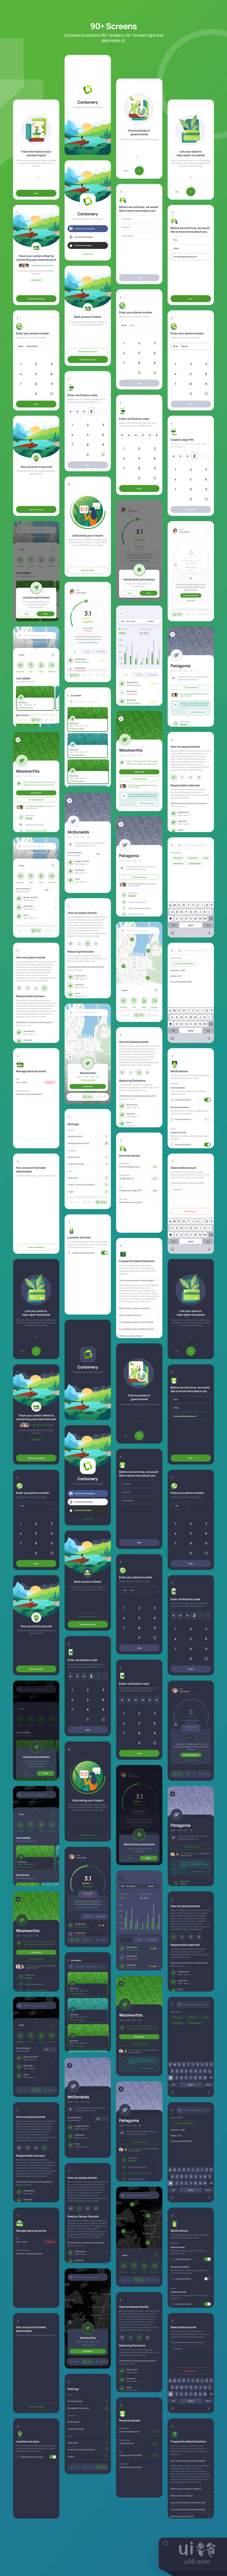 绿色主题App设计插图